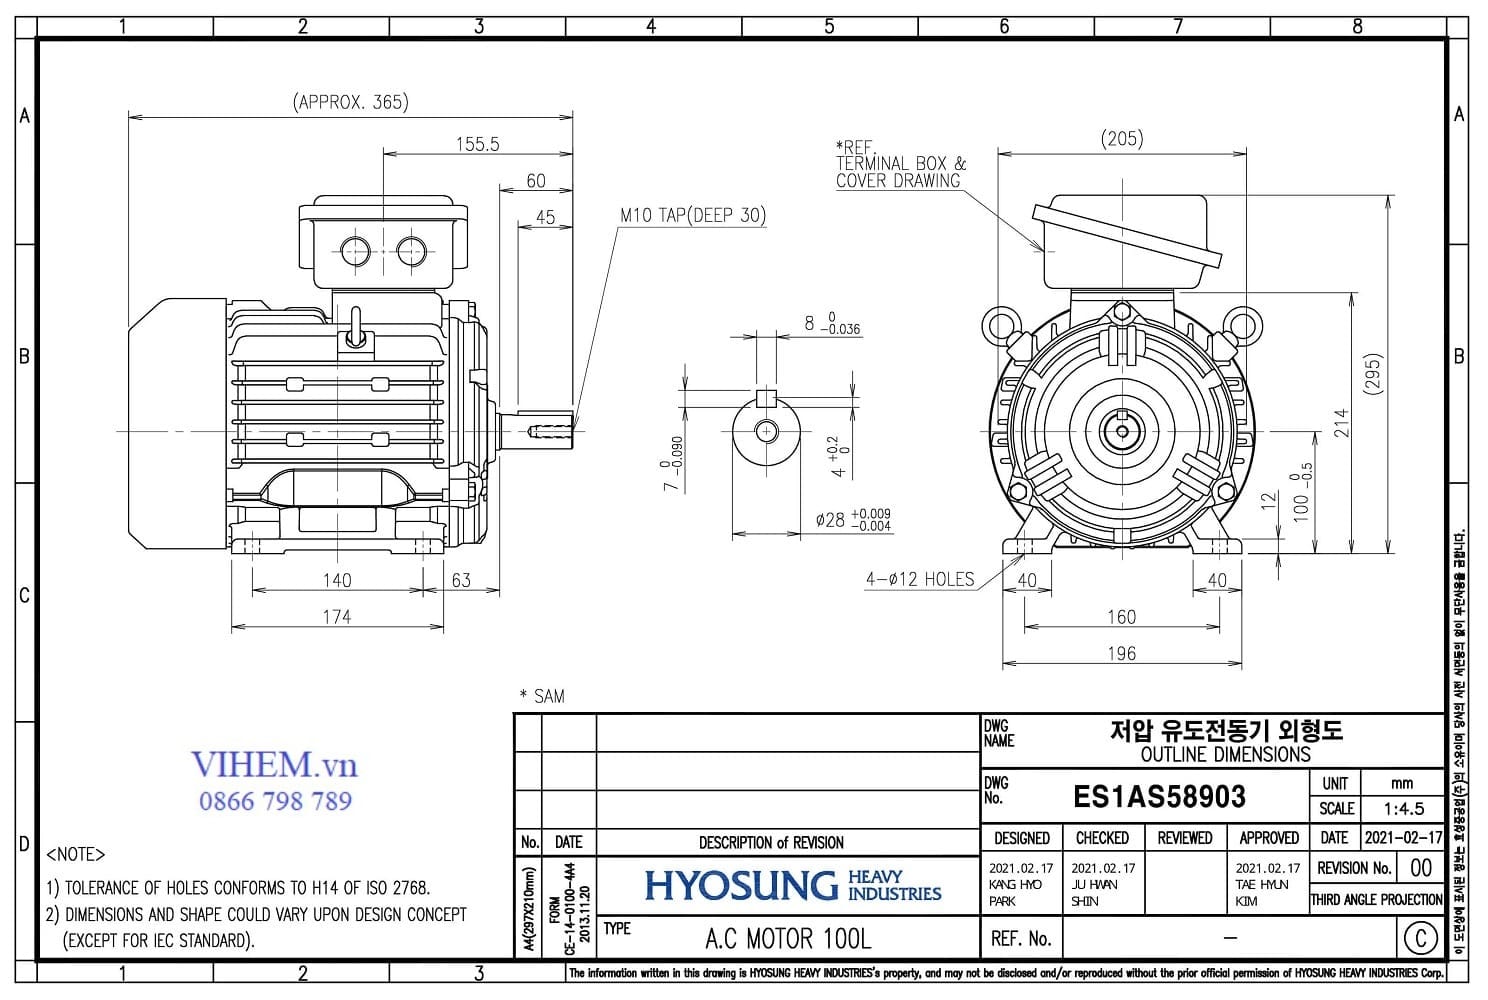 Kích thước lắp đặt & thống số kỹ thuật Motor HYOSUNG 3kW - 4P (1500 r/min)